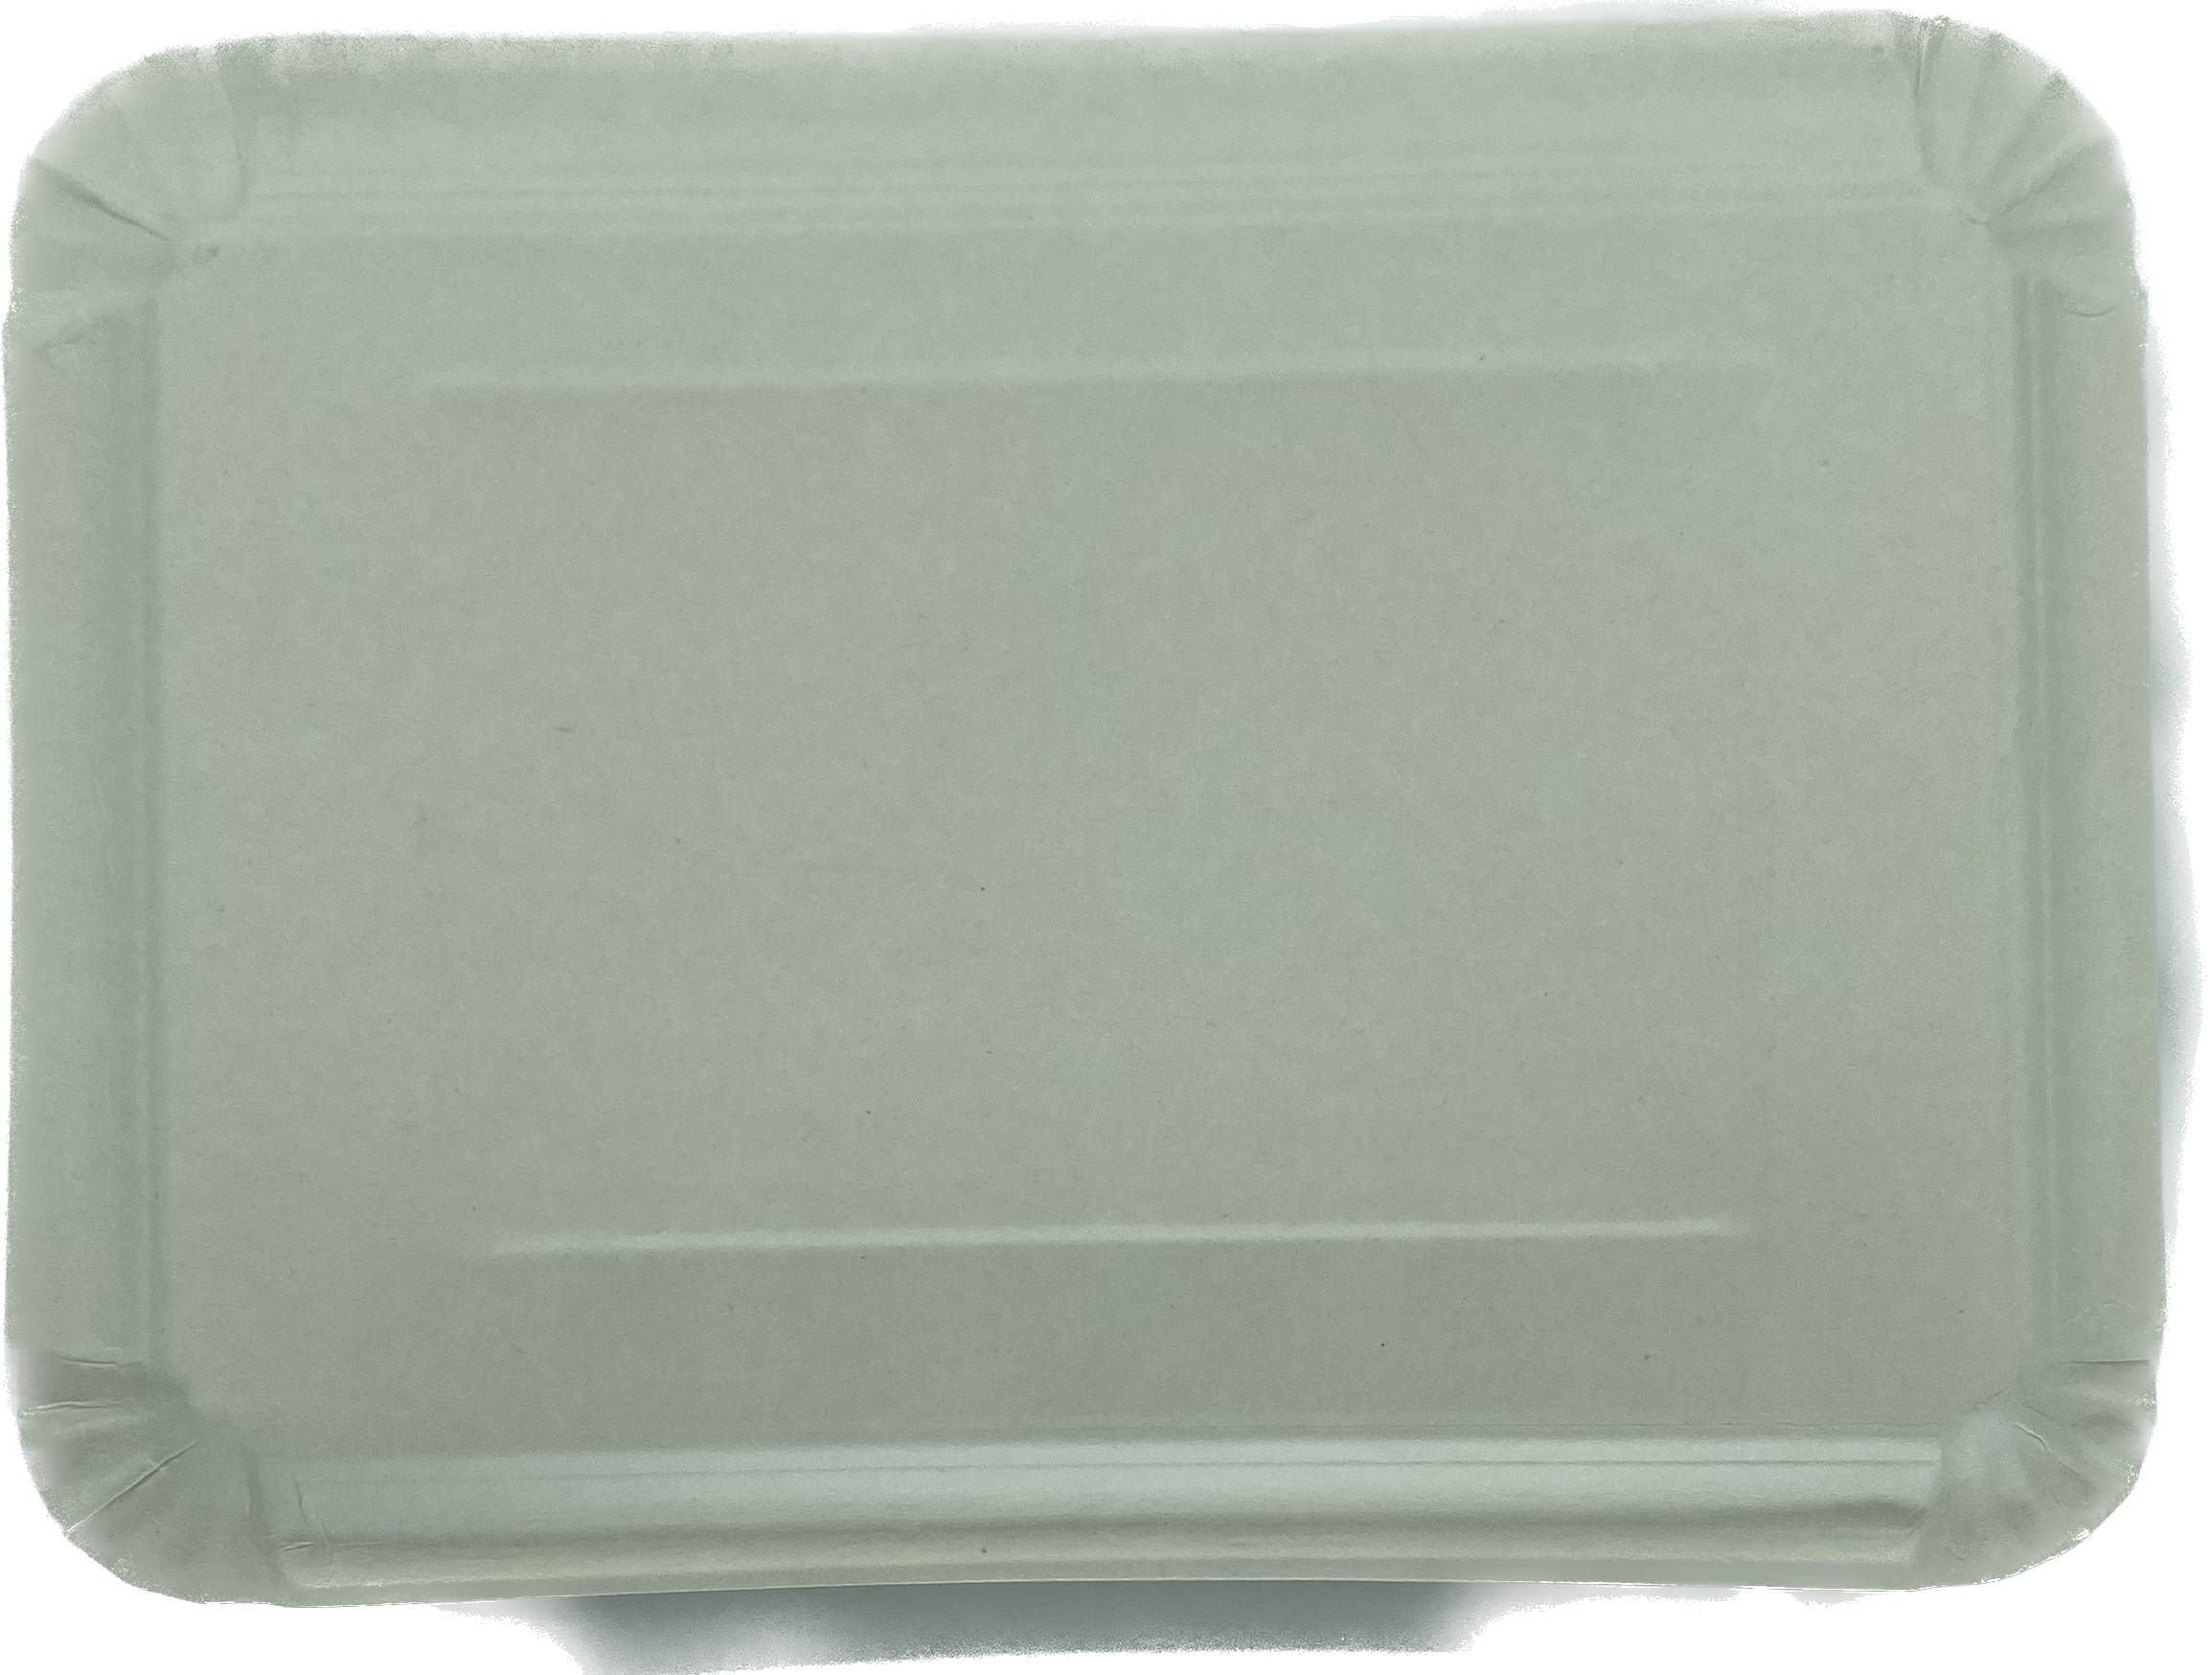 Pappteller 210 x 290mm, flach, weiß